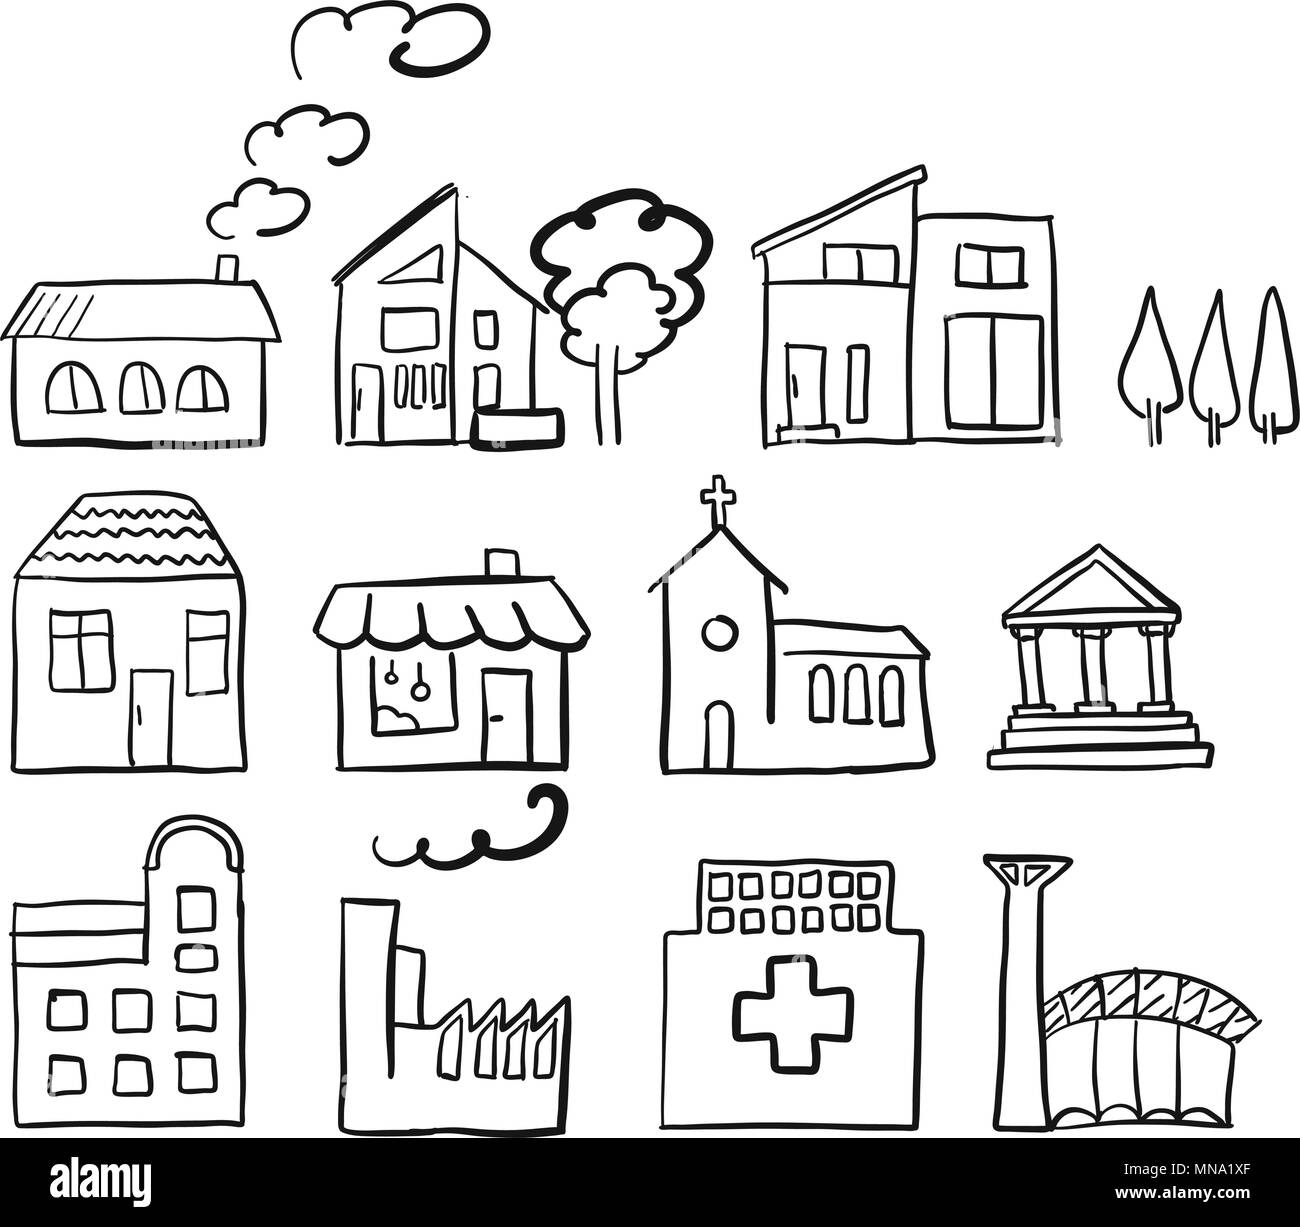 Verschiedene Haustypen, schnelle Vektor Skizze, Hand gezeichnet Vektor Maßbild schwarzen Stift auf weißem Grund Stock Vektor